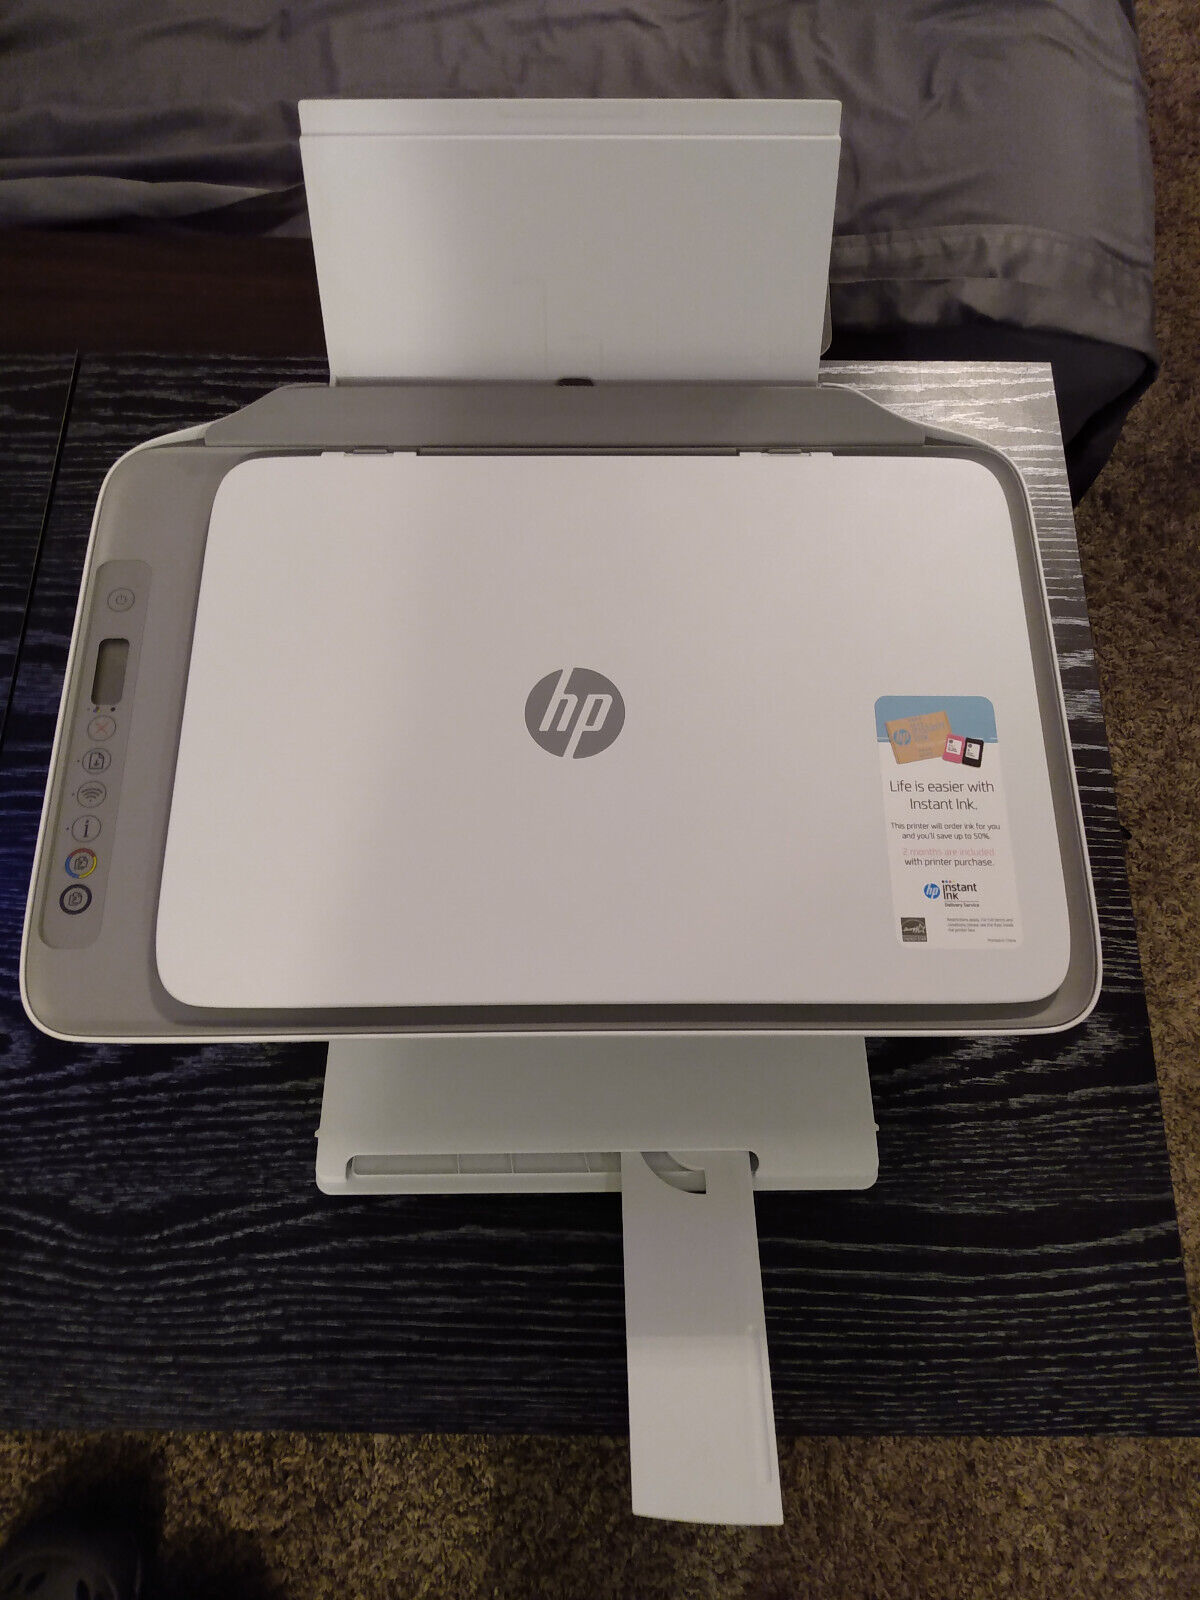 HP DeskJet 2755 Inkjet All-In-One Printer Barely used, black ink included